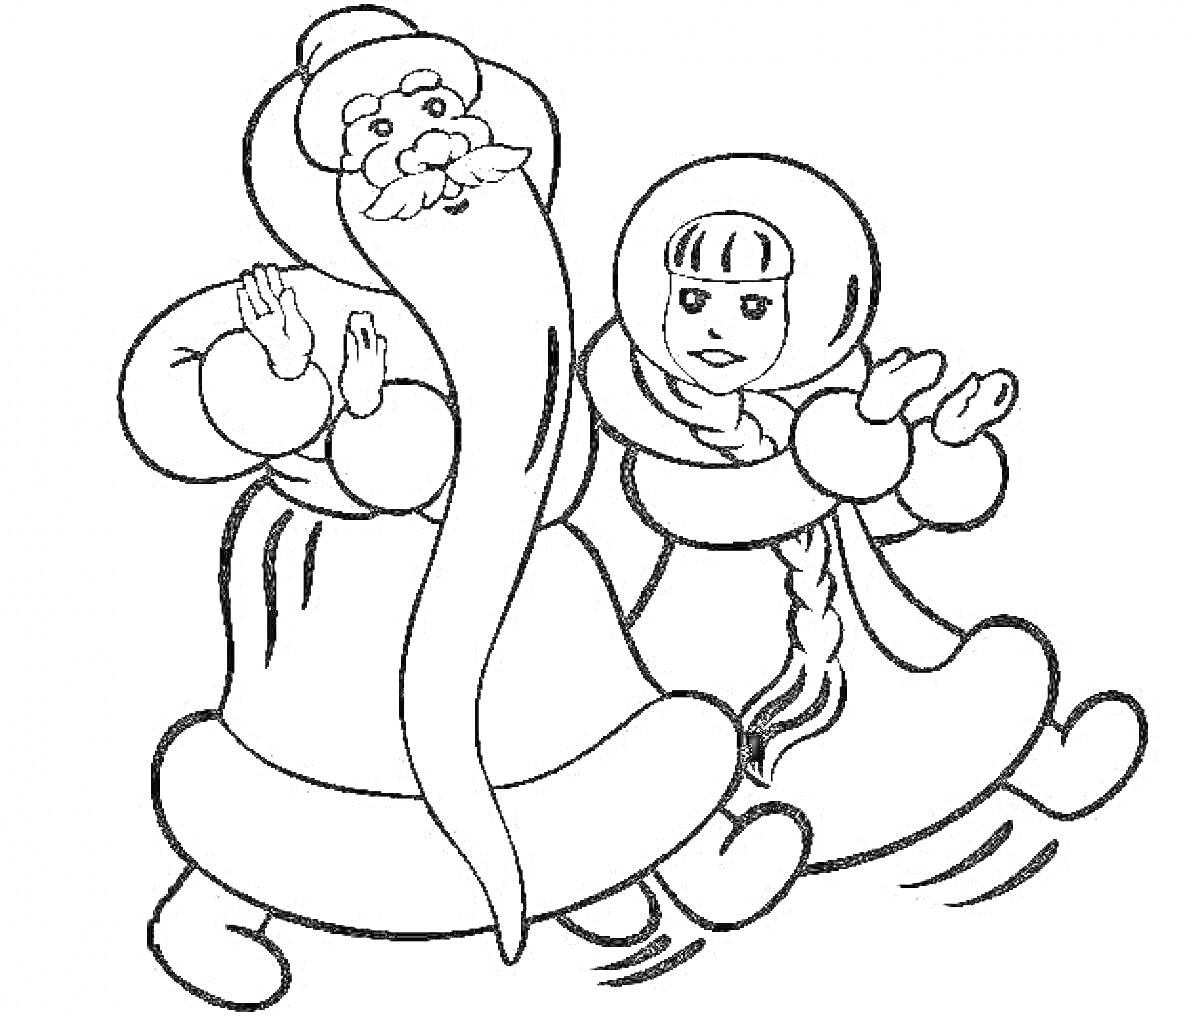 Раскраска Дед Мороз и Снегурочка, танцующие вместе, с длинной бородой у Деда Мороза и косой у Снегурочки